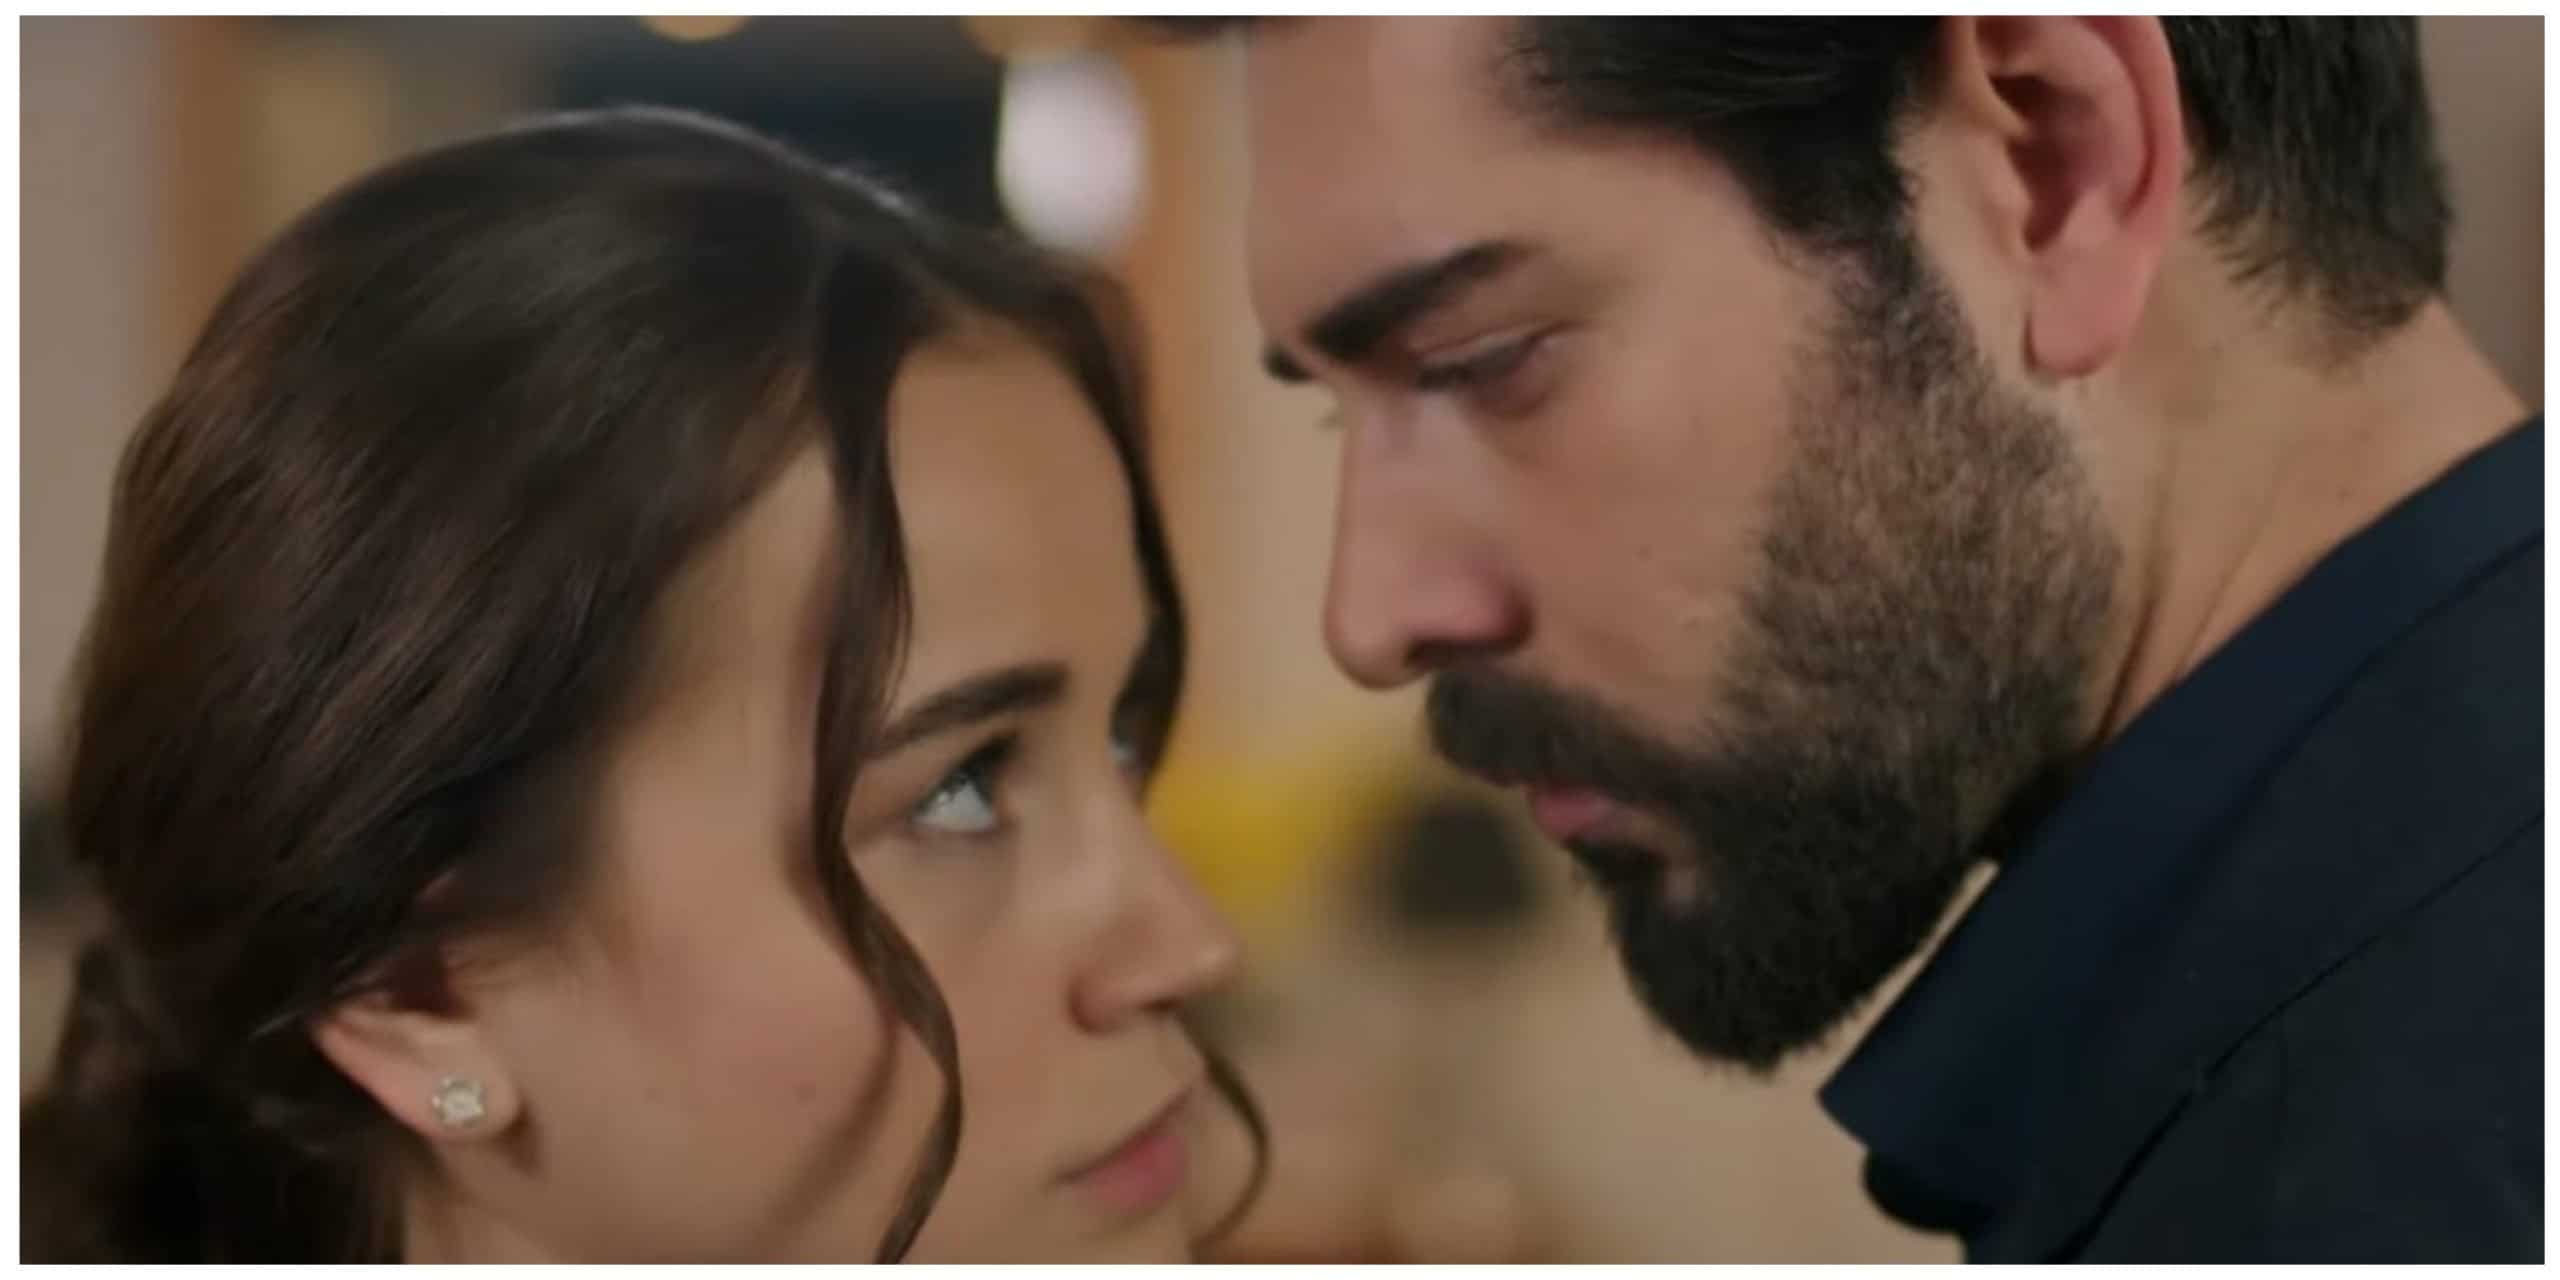 Kan Cicekleri Turkish Romance Drama Episode 55 Synopsis